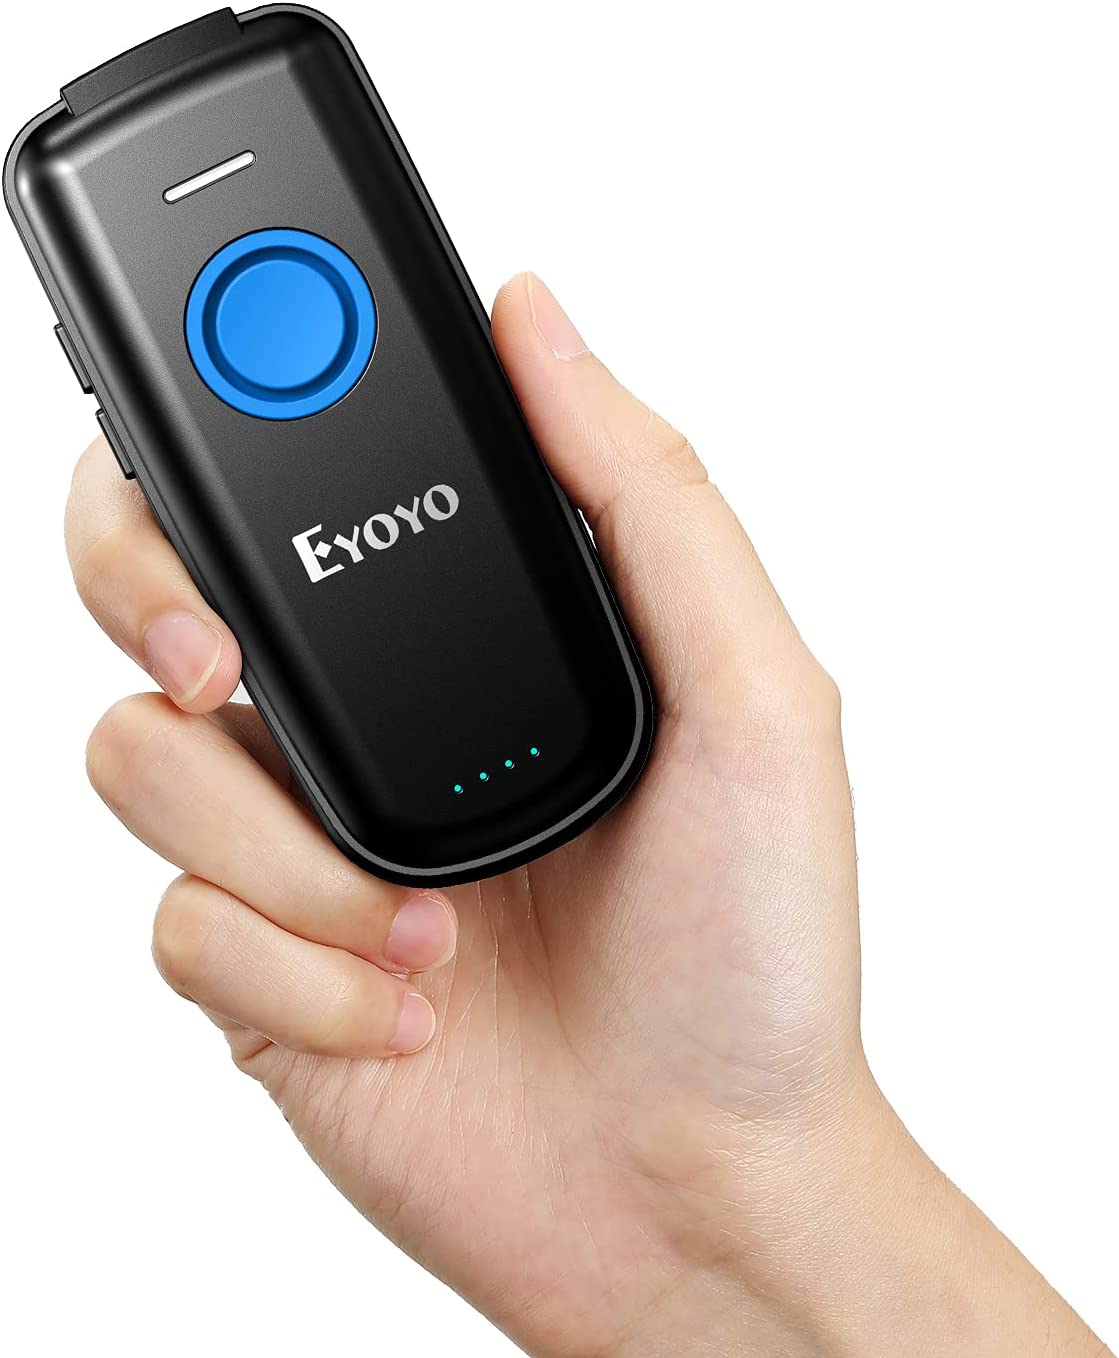 Eyoyo Escáner de código QR Bluetooth, con botón de ajuste de volumen e interruptor de alimentación física, escáner de código de barras 2D portátil para inventario, lector de imágenes inalámbrico de 2.4 G para tablet, iPhone, iPad, Android, iOS PC POS